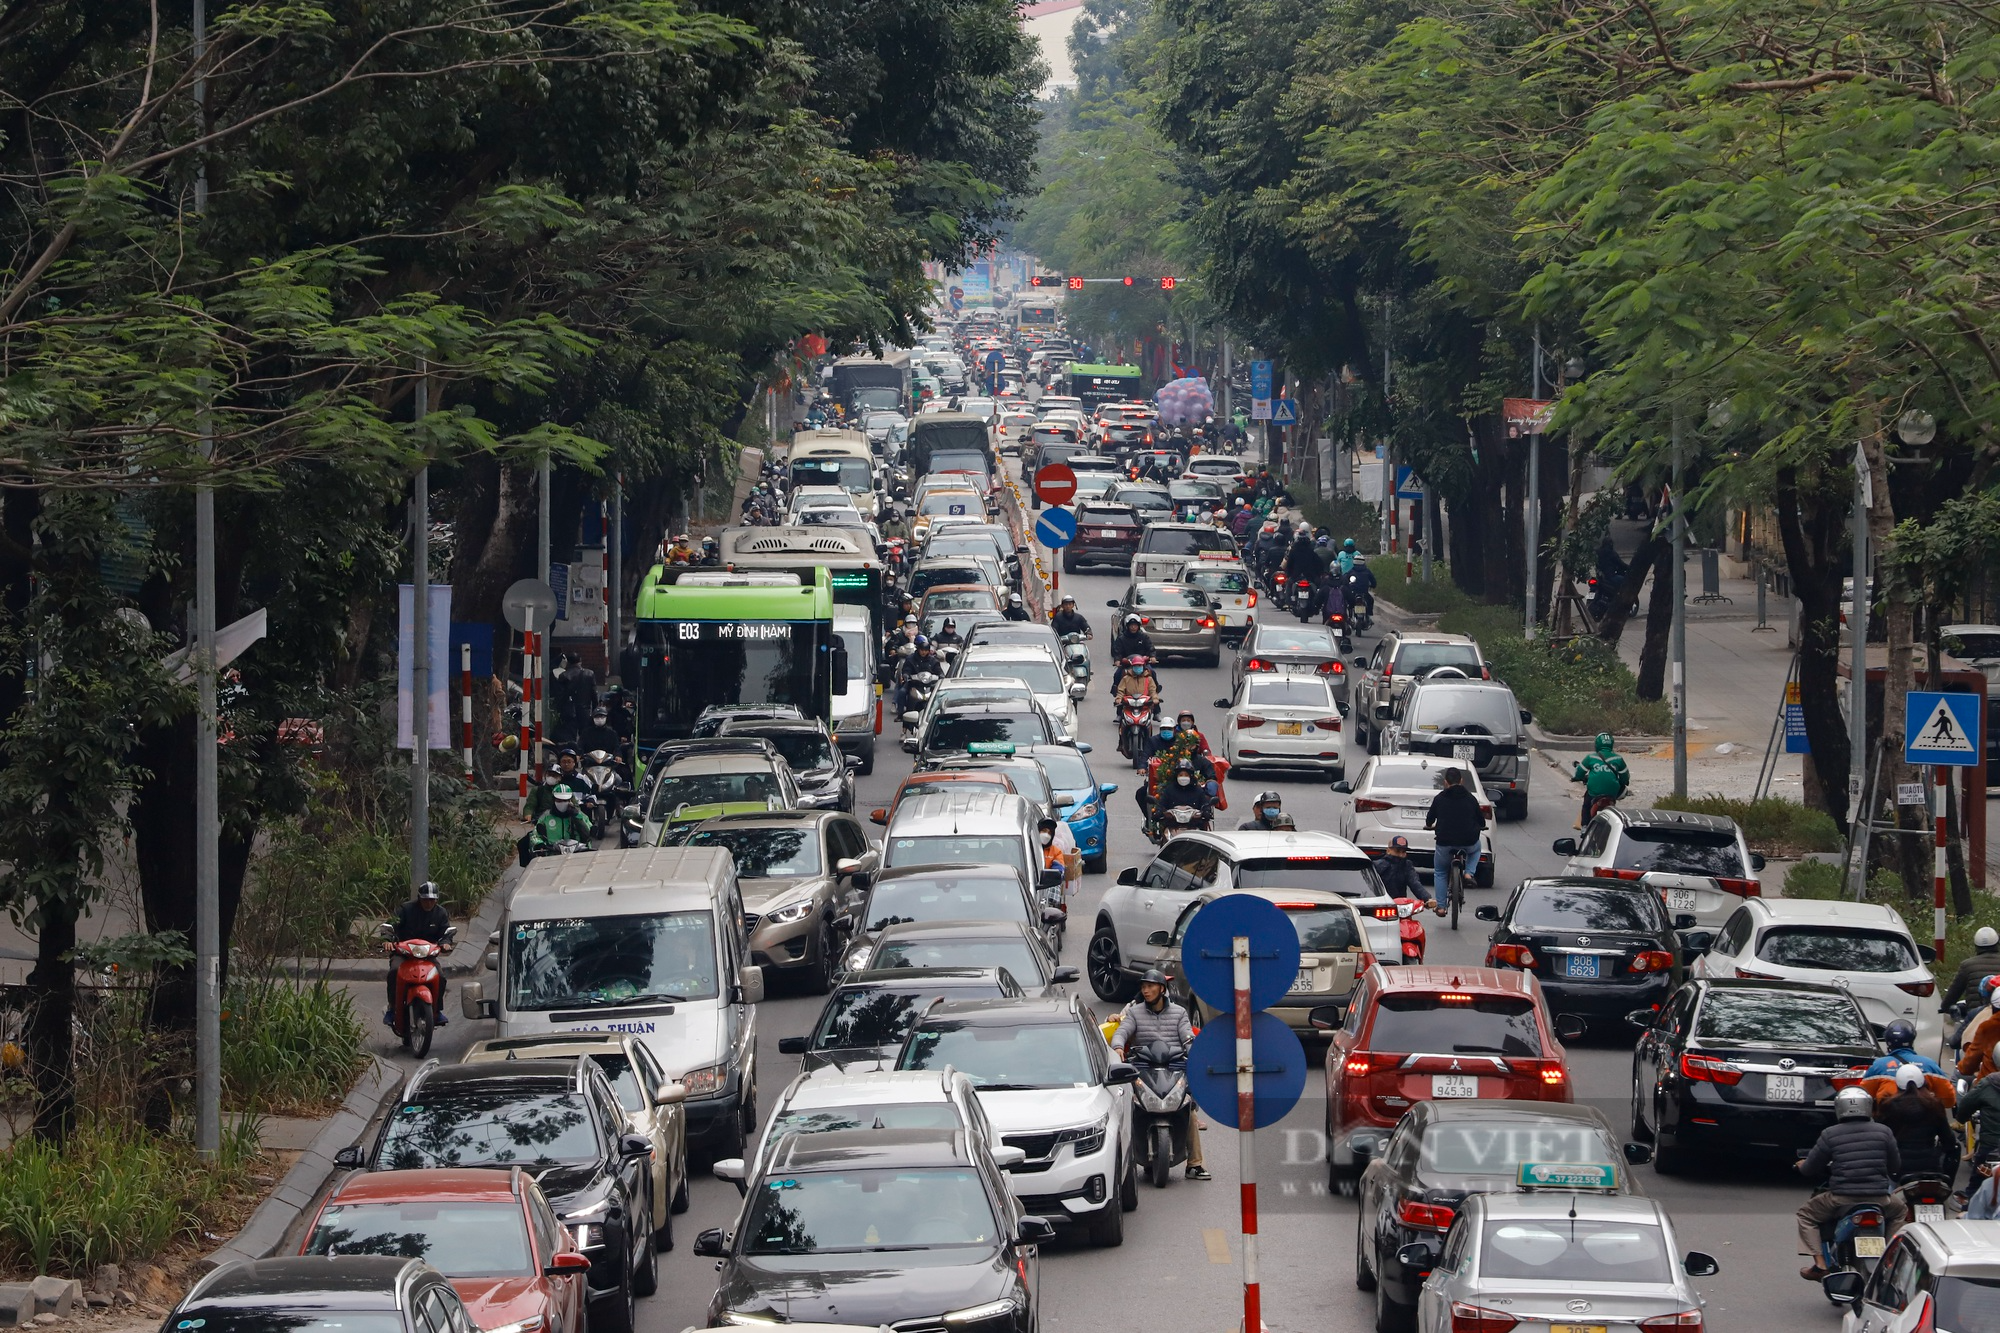 Xe buýt hỏng giữa đường, đường phố Hà Nội ùn tắc kéo dài hàng Km ngày cận Tết - Ảnh 5.